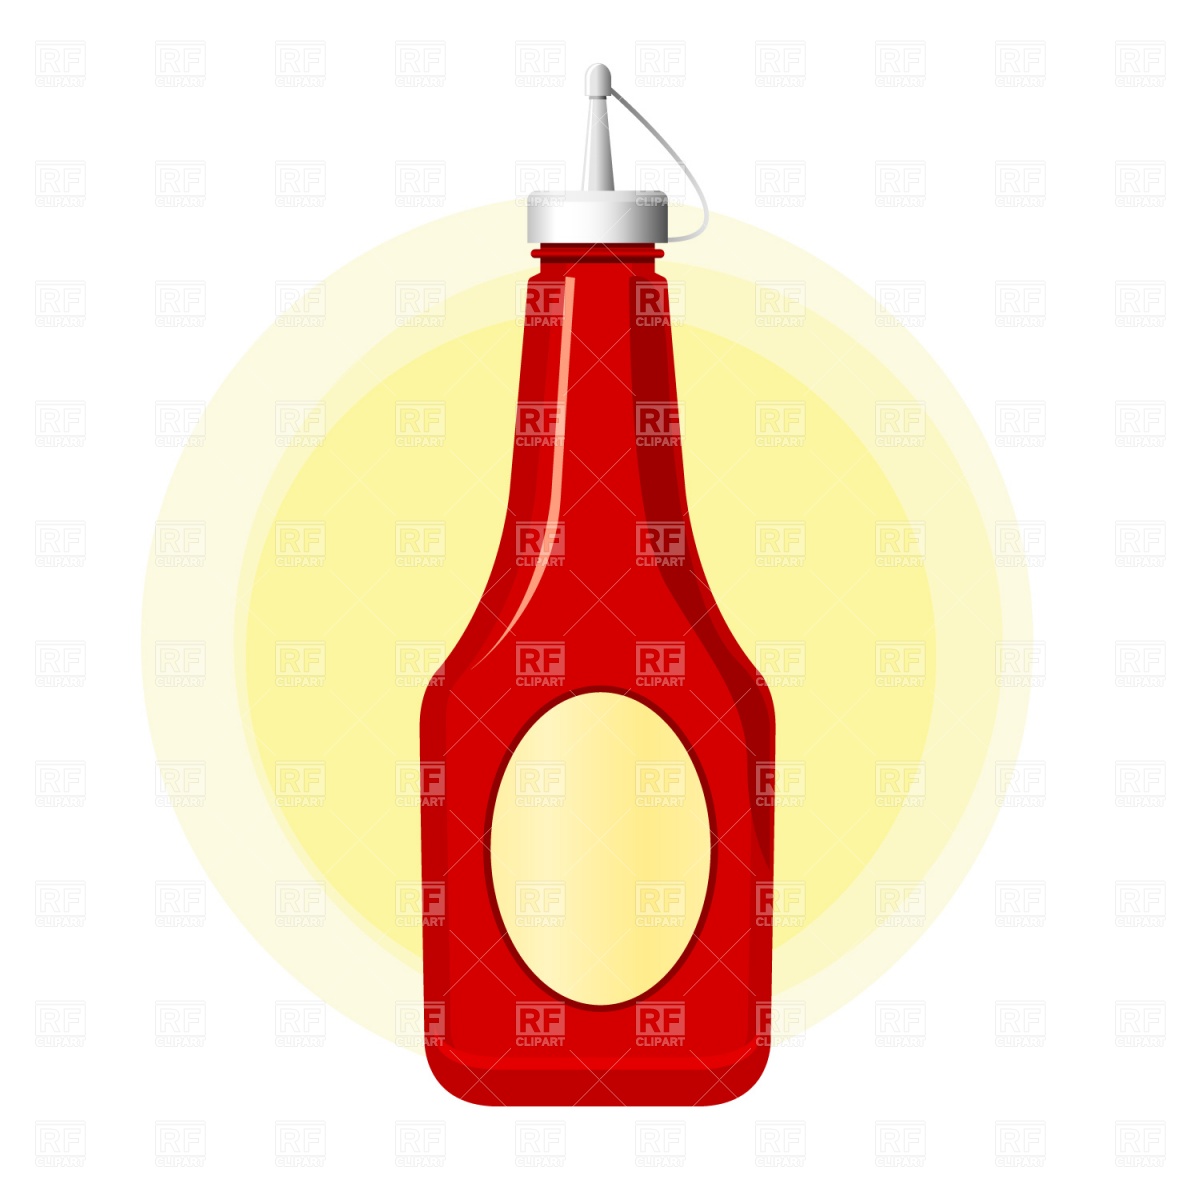 Ketchup bottle vector image of food and beverages prague 3 jpg